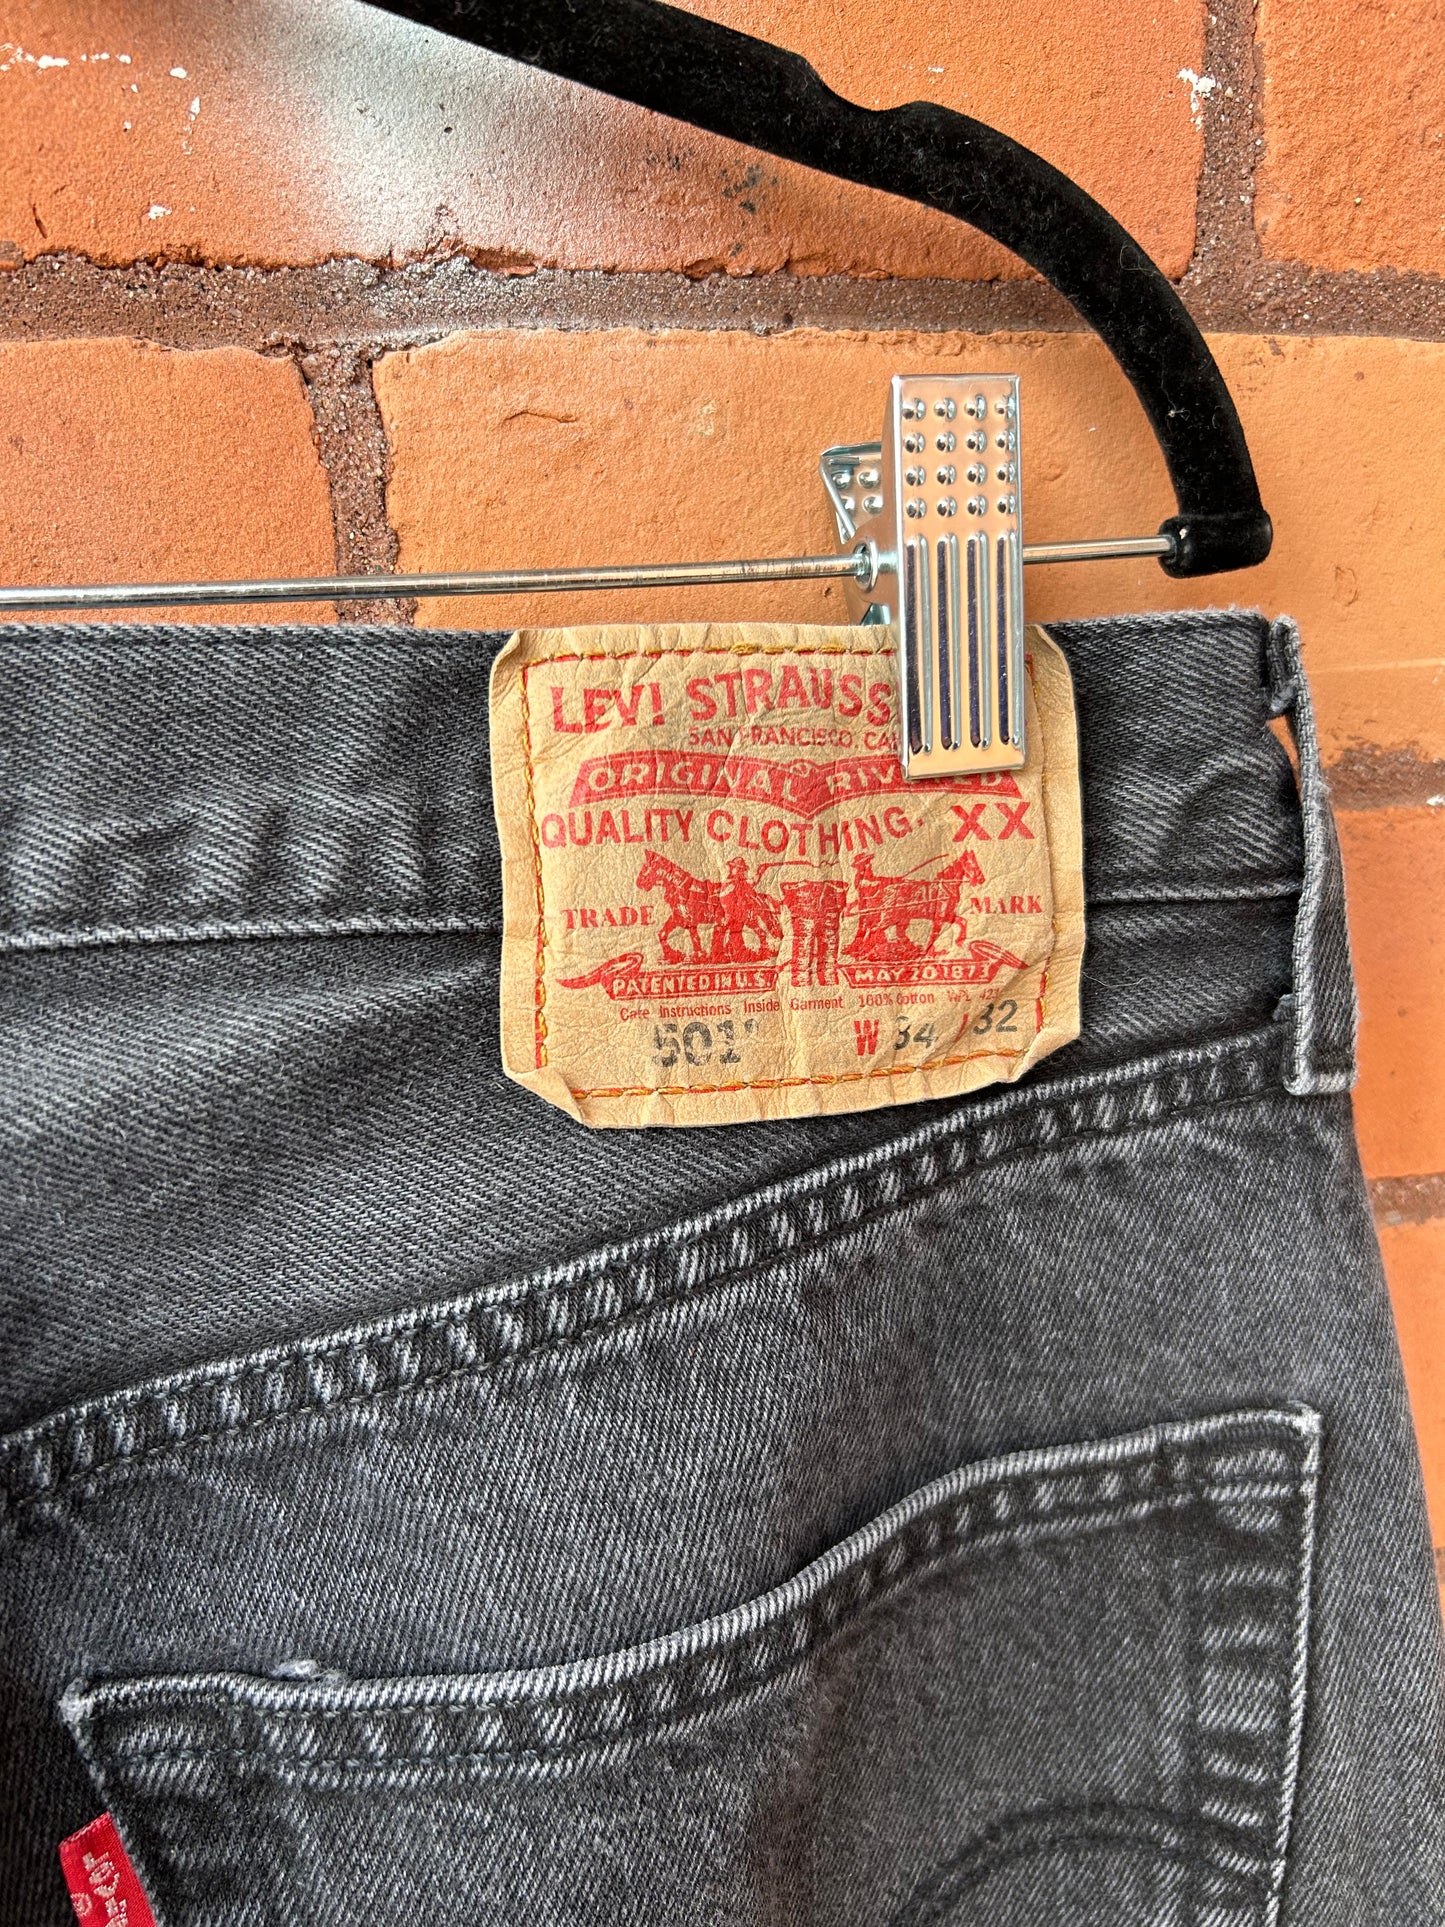 90’s Vintage Levi’s Faded Black 501 Straight Leg Jeans / 32 Waist